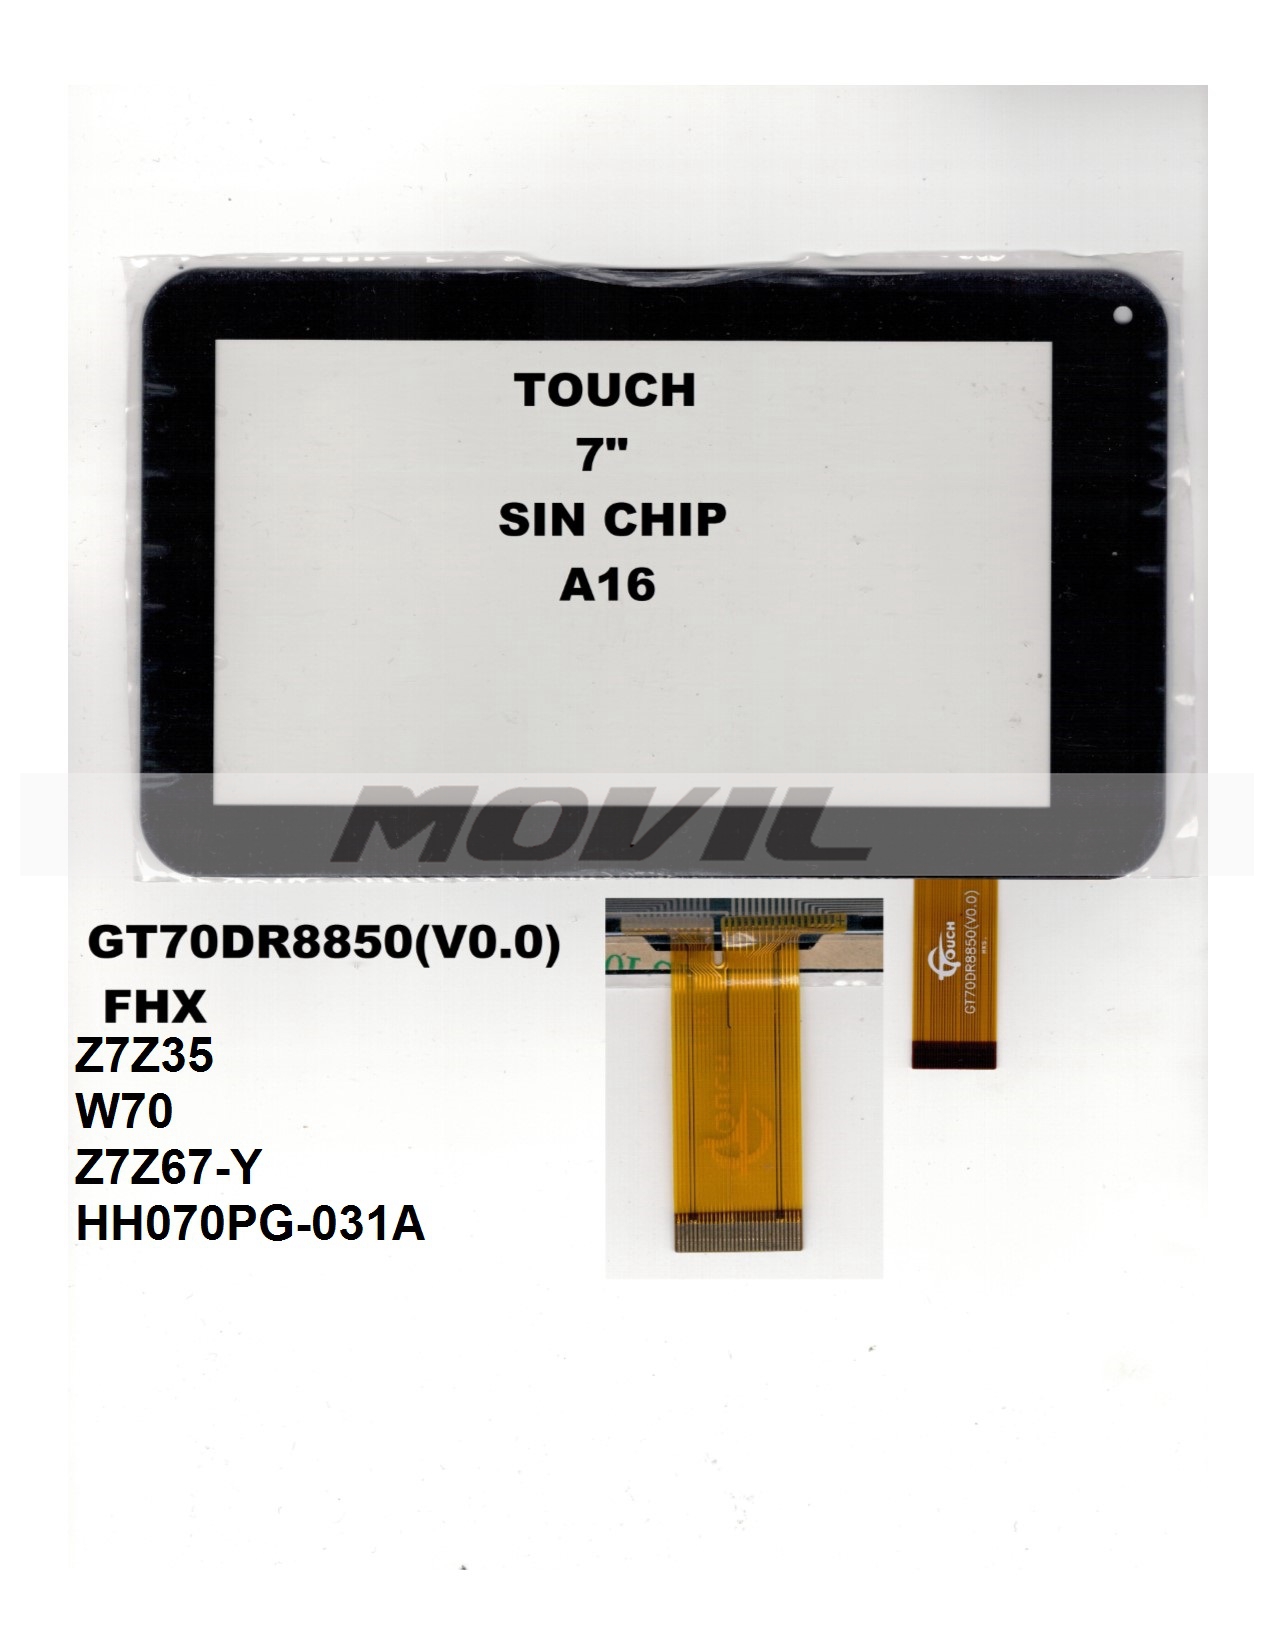 Touch tactil para tablet flex 7 inch SIN CHIP A16 GT70DR8850(V0.0)